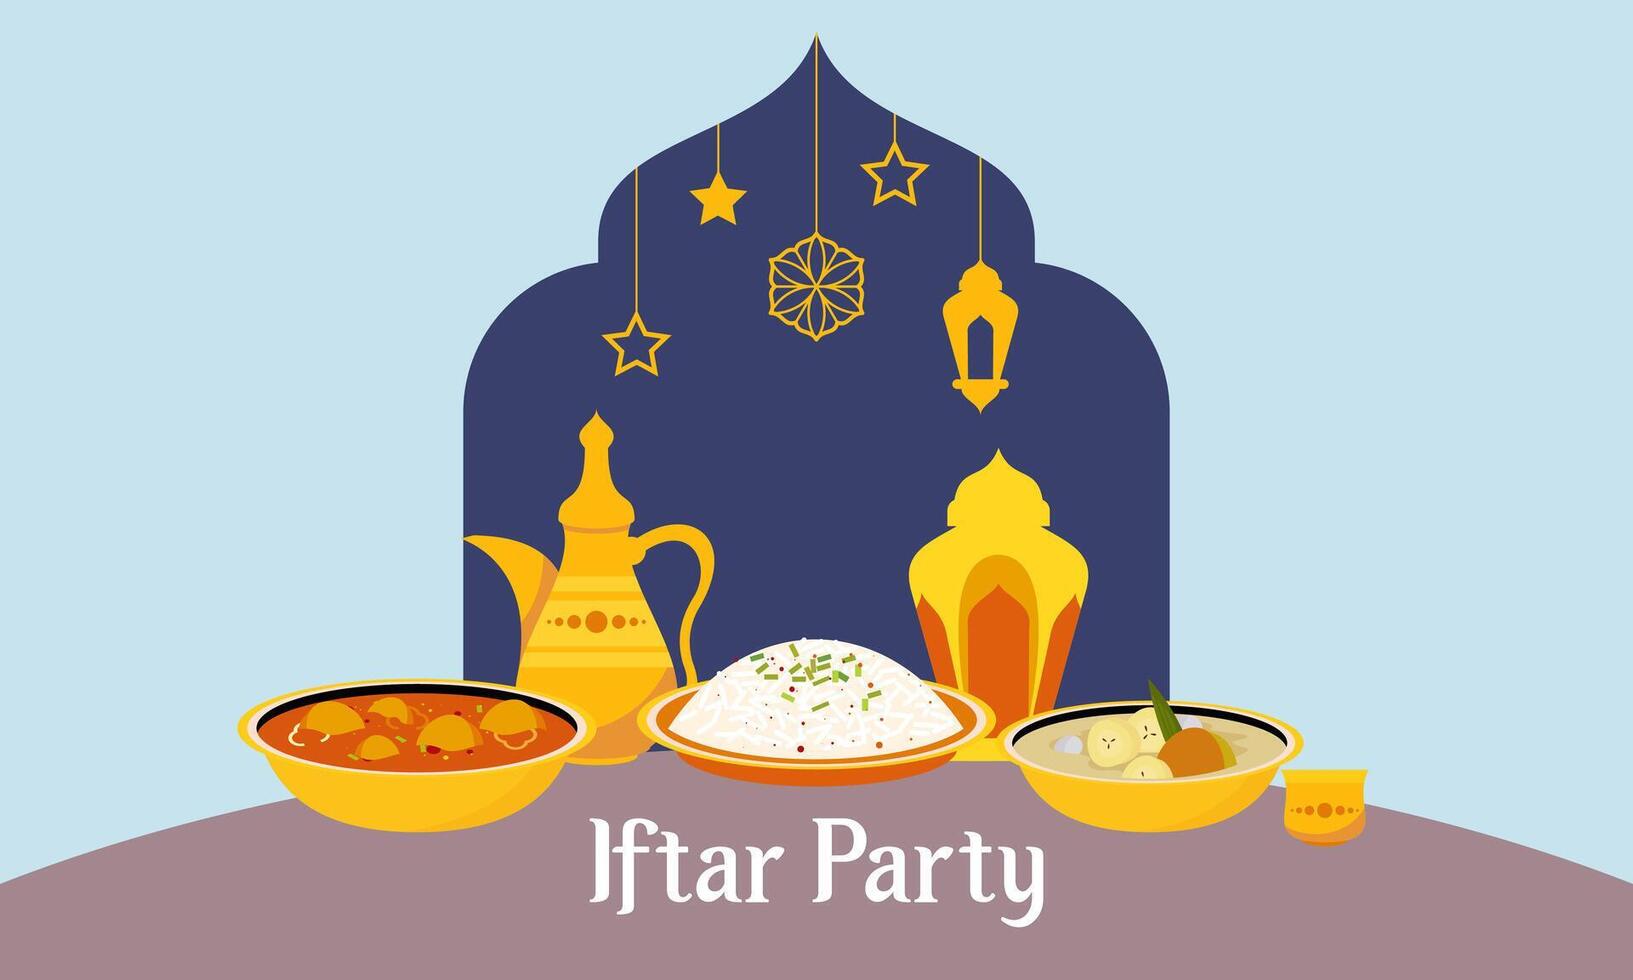 iftar fête fête concept prospectus vecteur